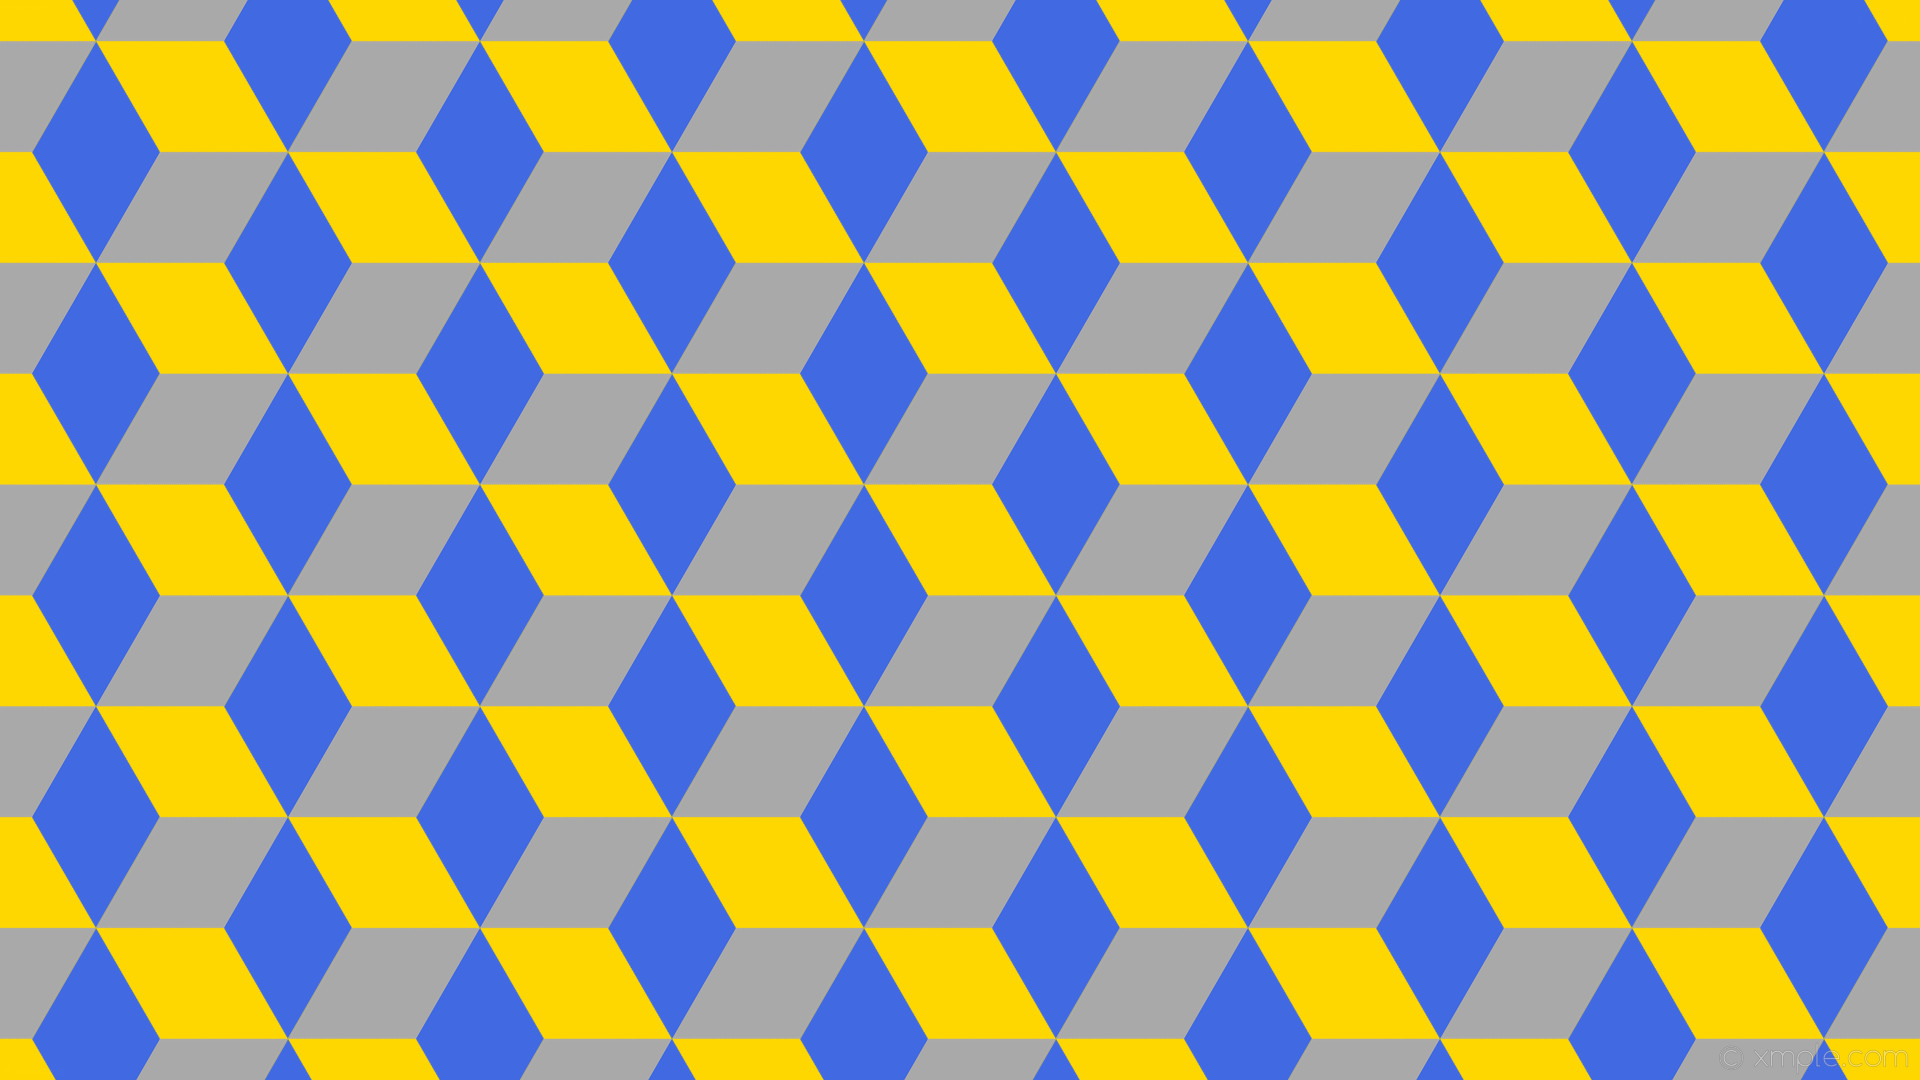 1920x1080 wallpaper 3d cubes blue yellow grey gold royal blue dark gray #ffd700  #4169e1 #